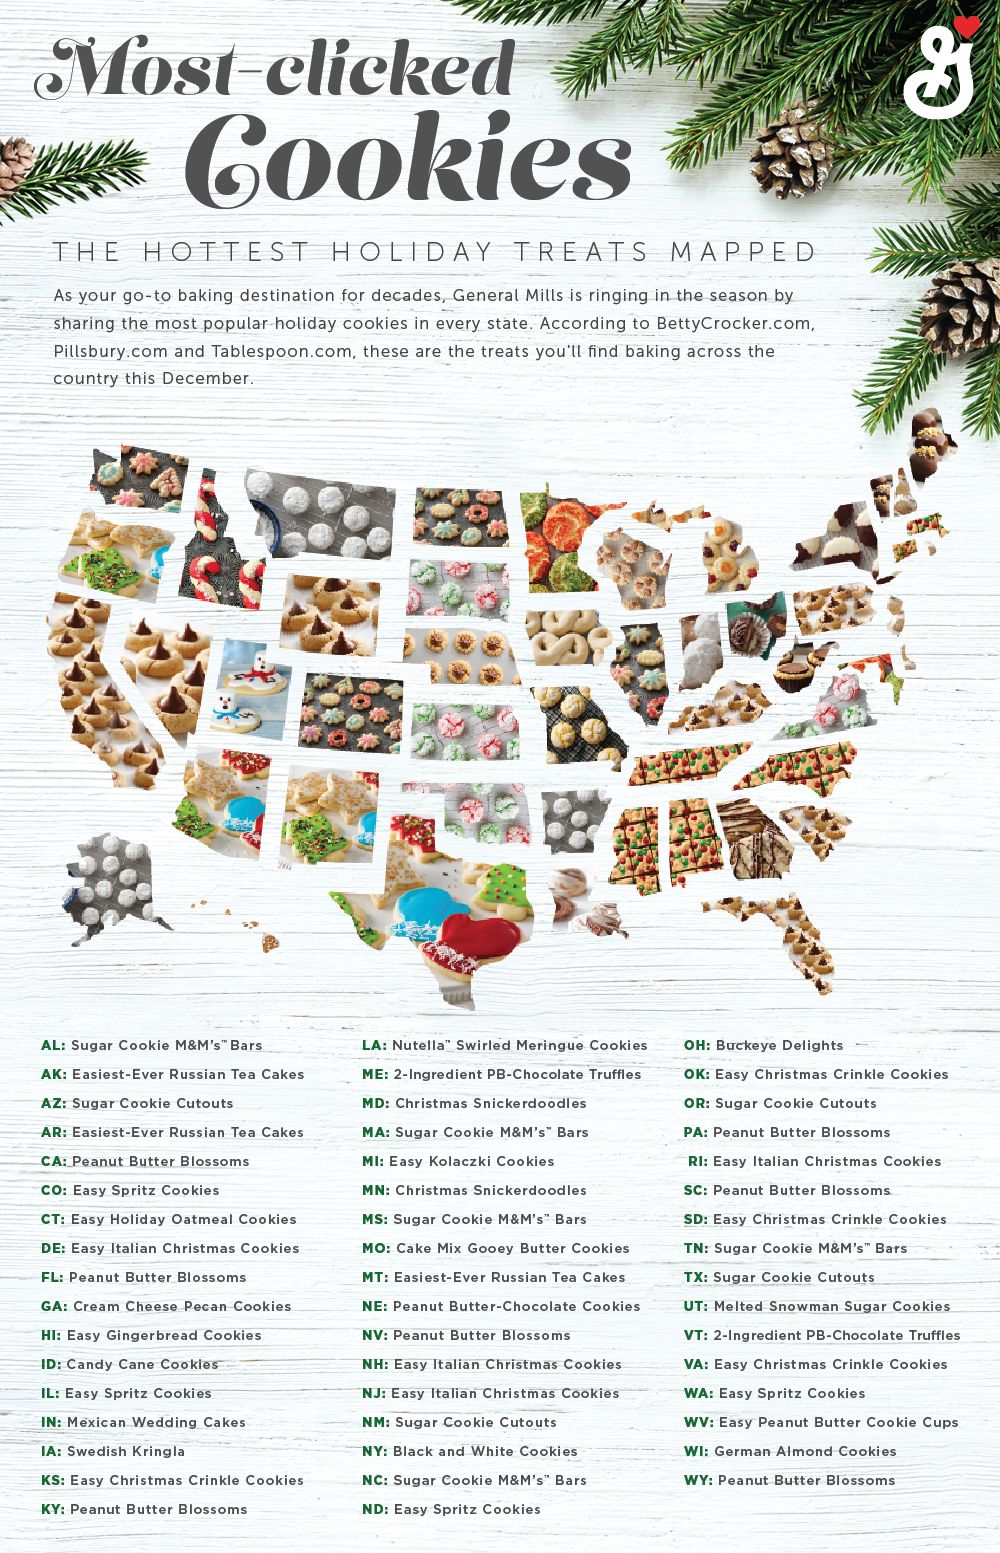 Mīļākie cepumi un populārākie Ziemassvētku cepumi Amerikā, norāda General Mills